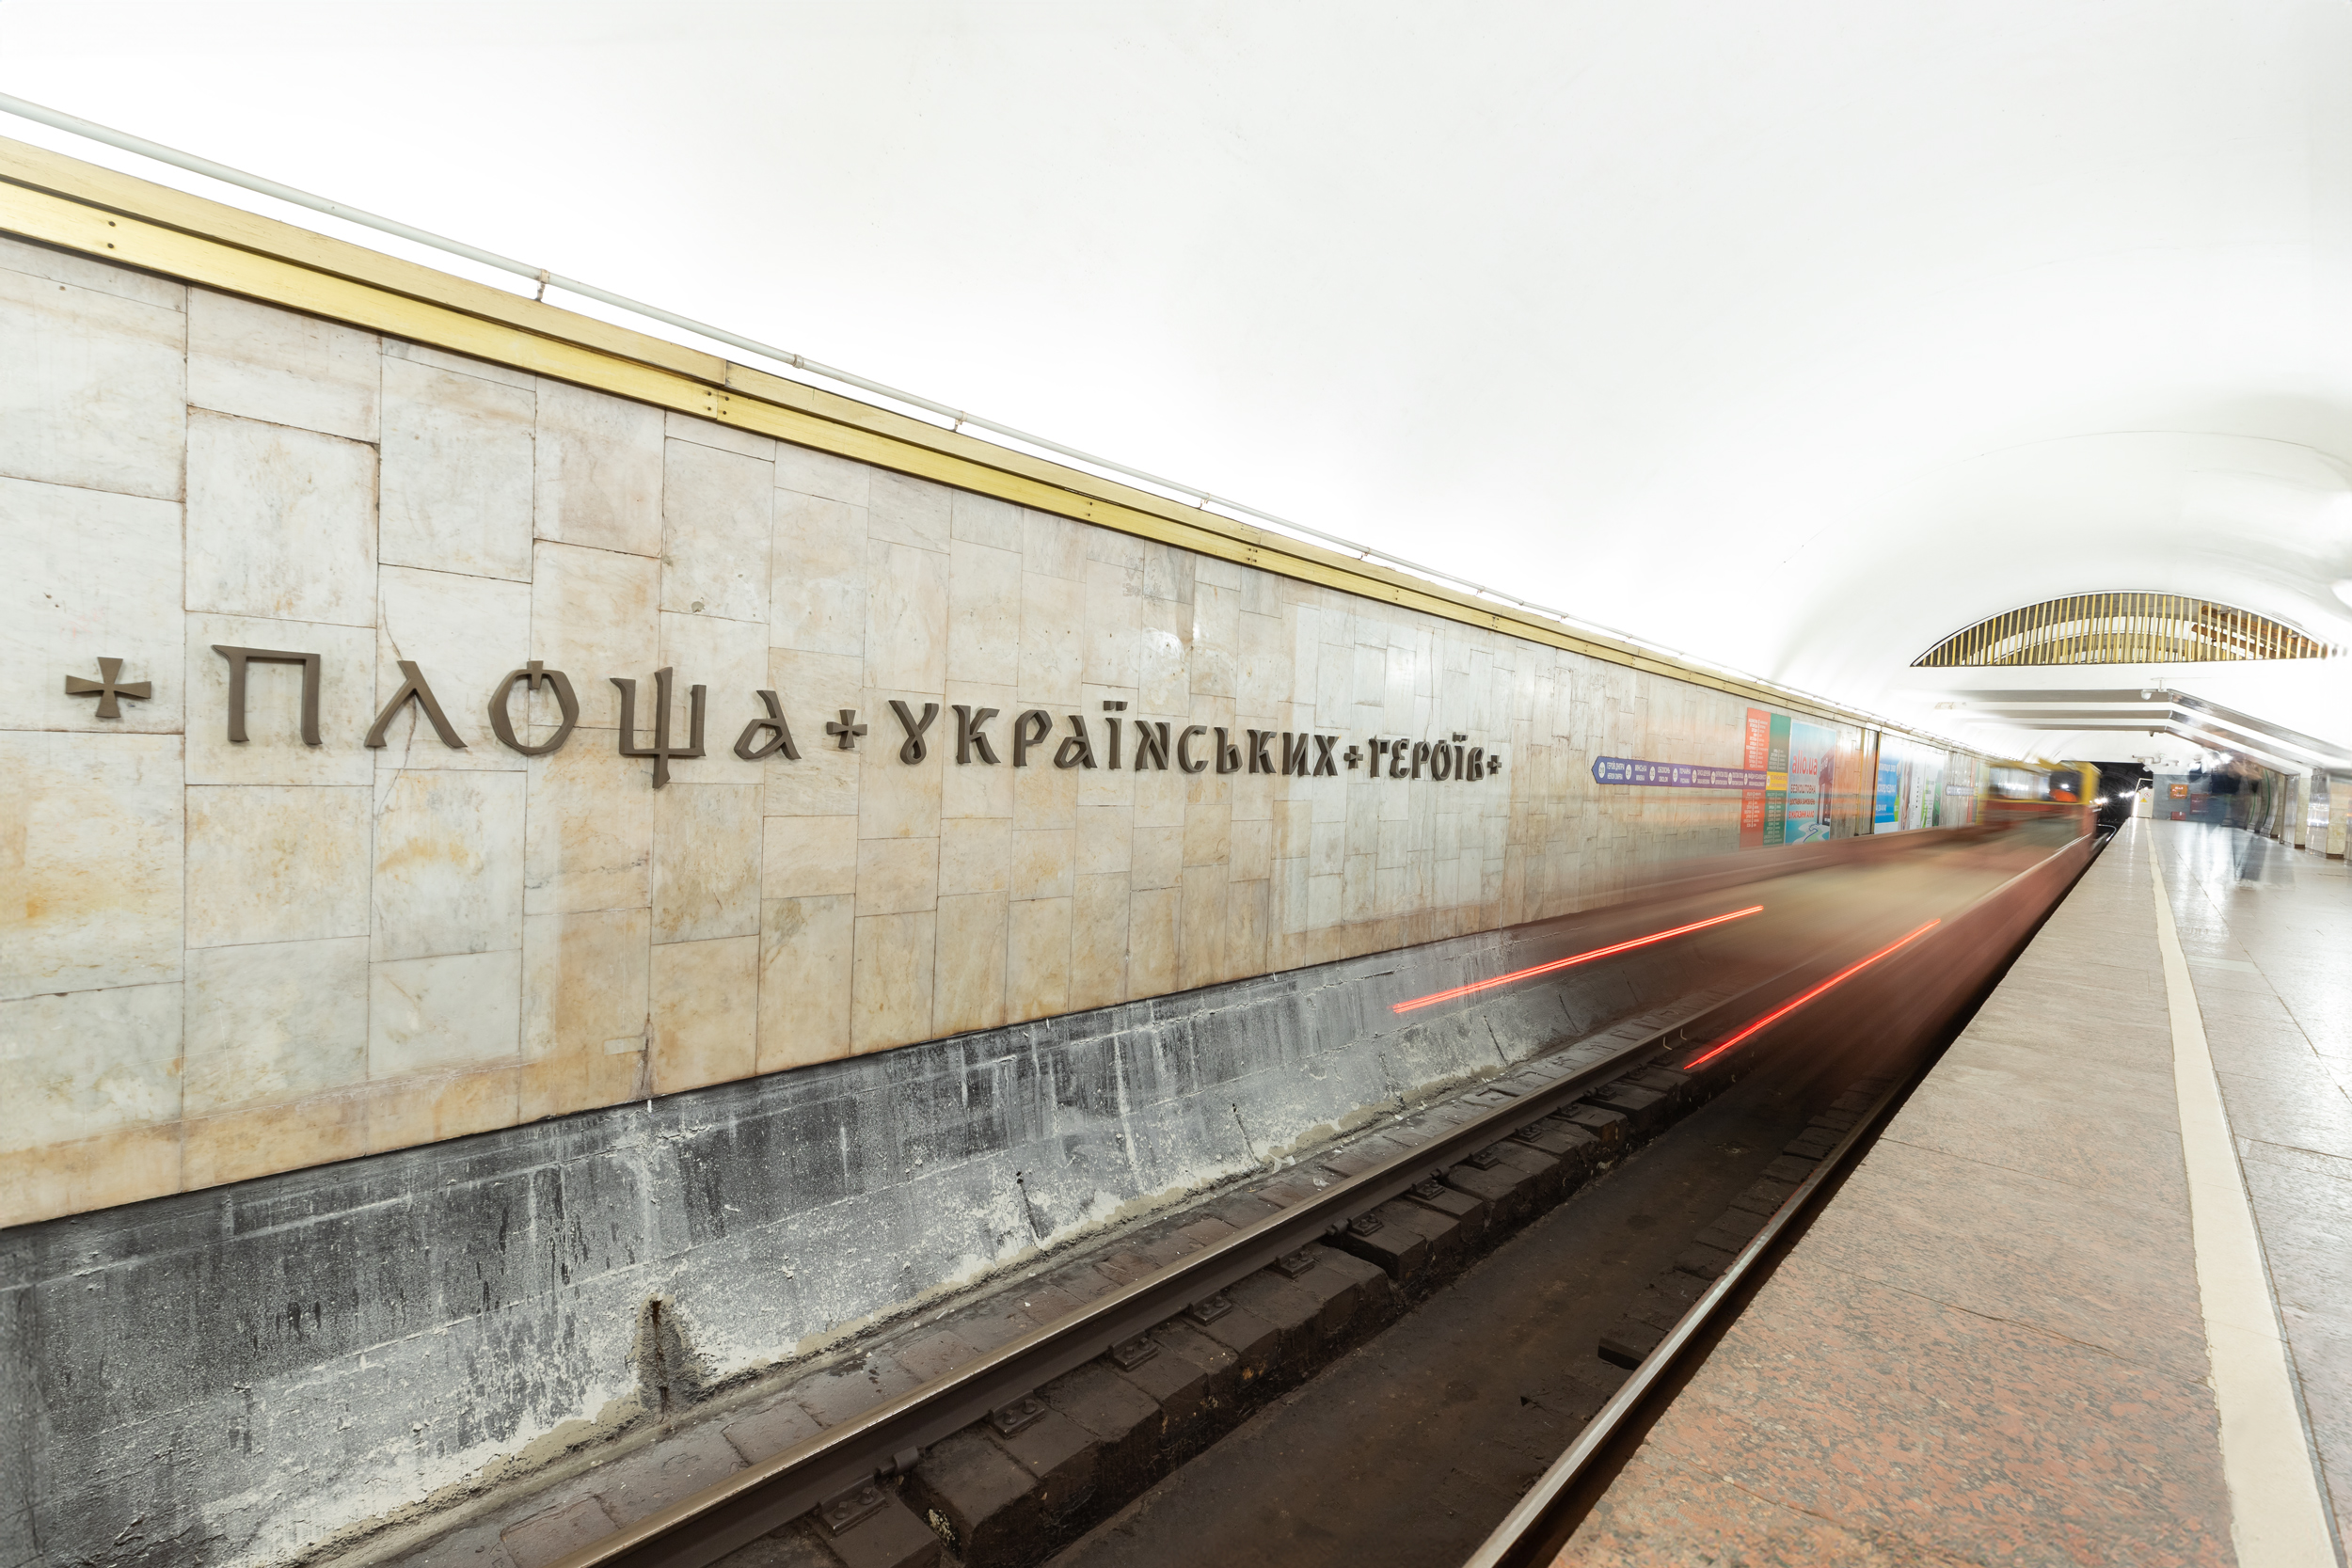 На перейменованій станції “Площа Українських Героїв” змонтували перший комплект літер (фото)